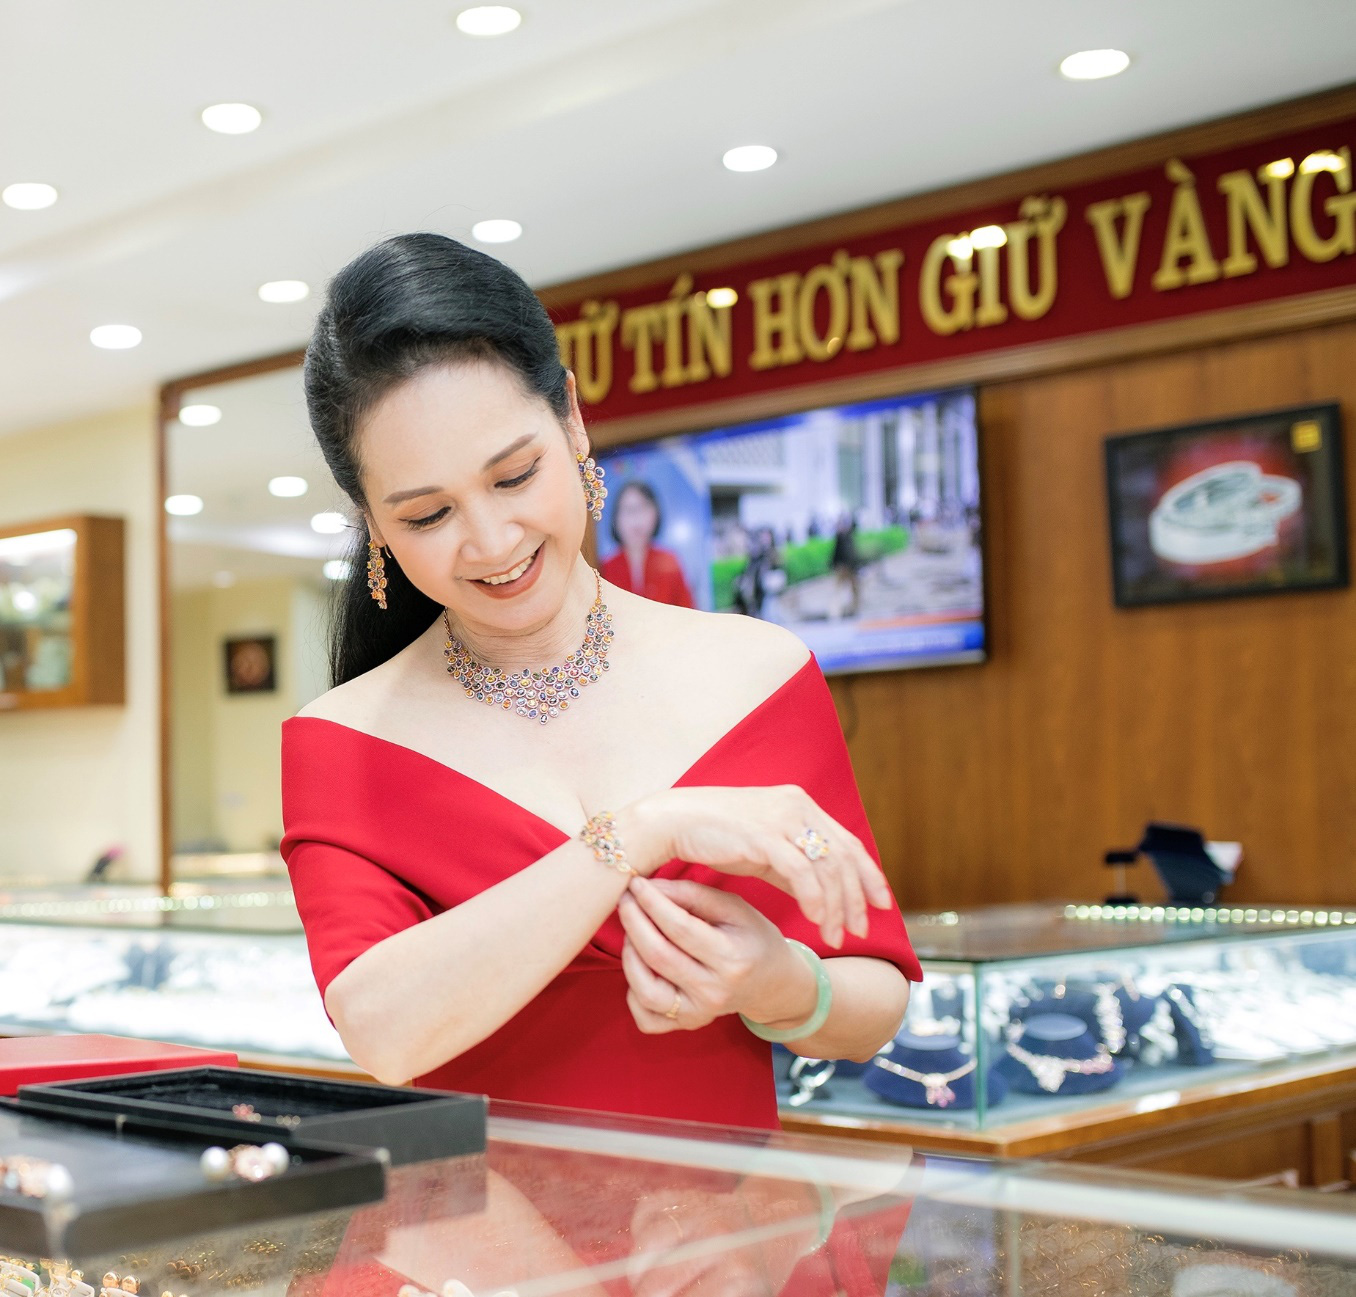 Bắt gặp NSND Lan Hương chọn trang sức ở Bảo tín Thanh Vân - Ảnh 2.